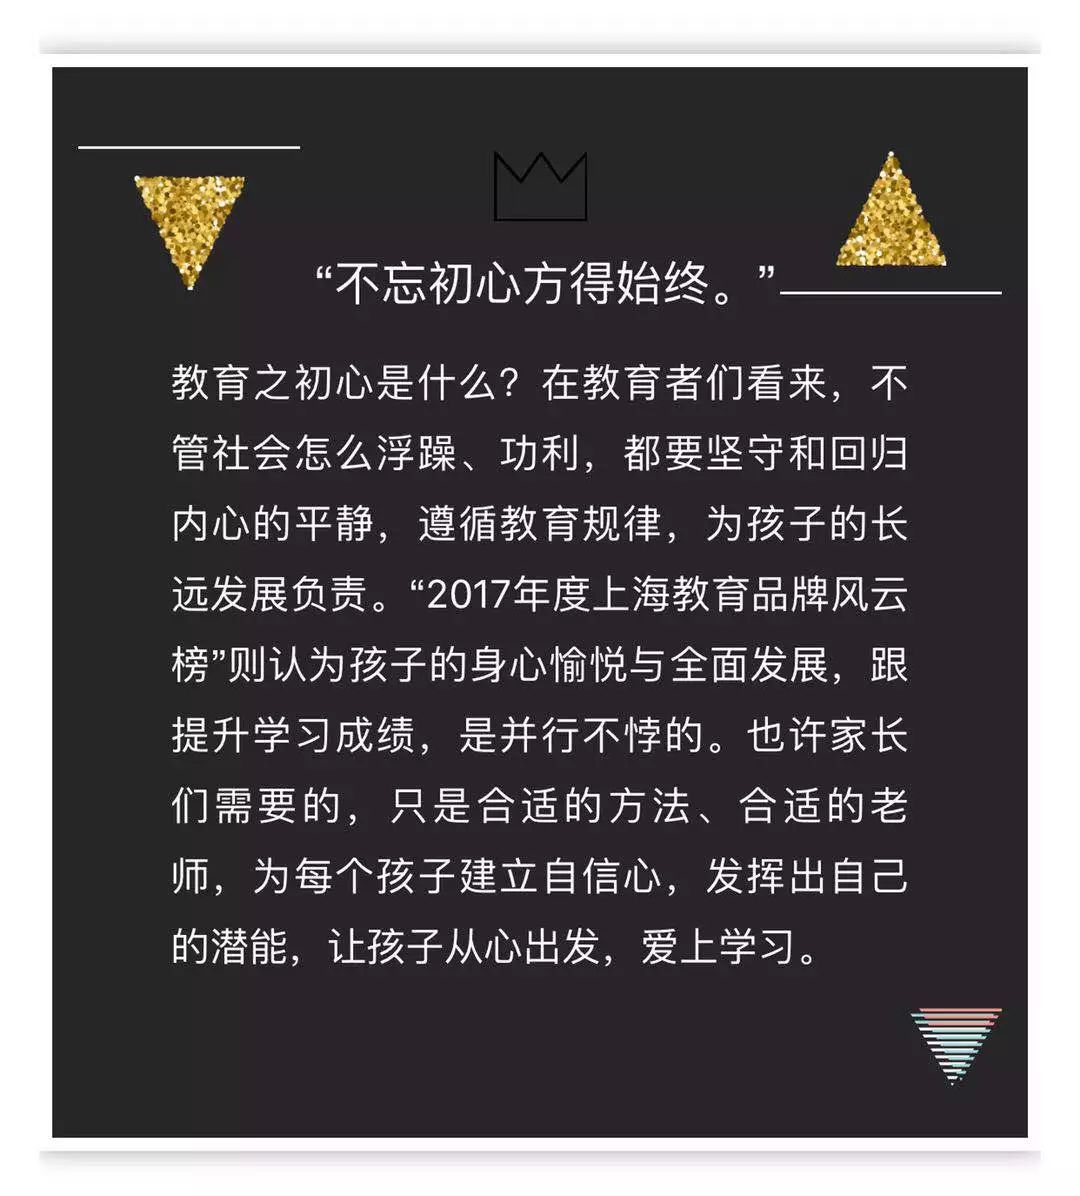 【回归教育初心】2017年度上海教育品牌风云